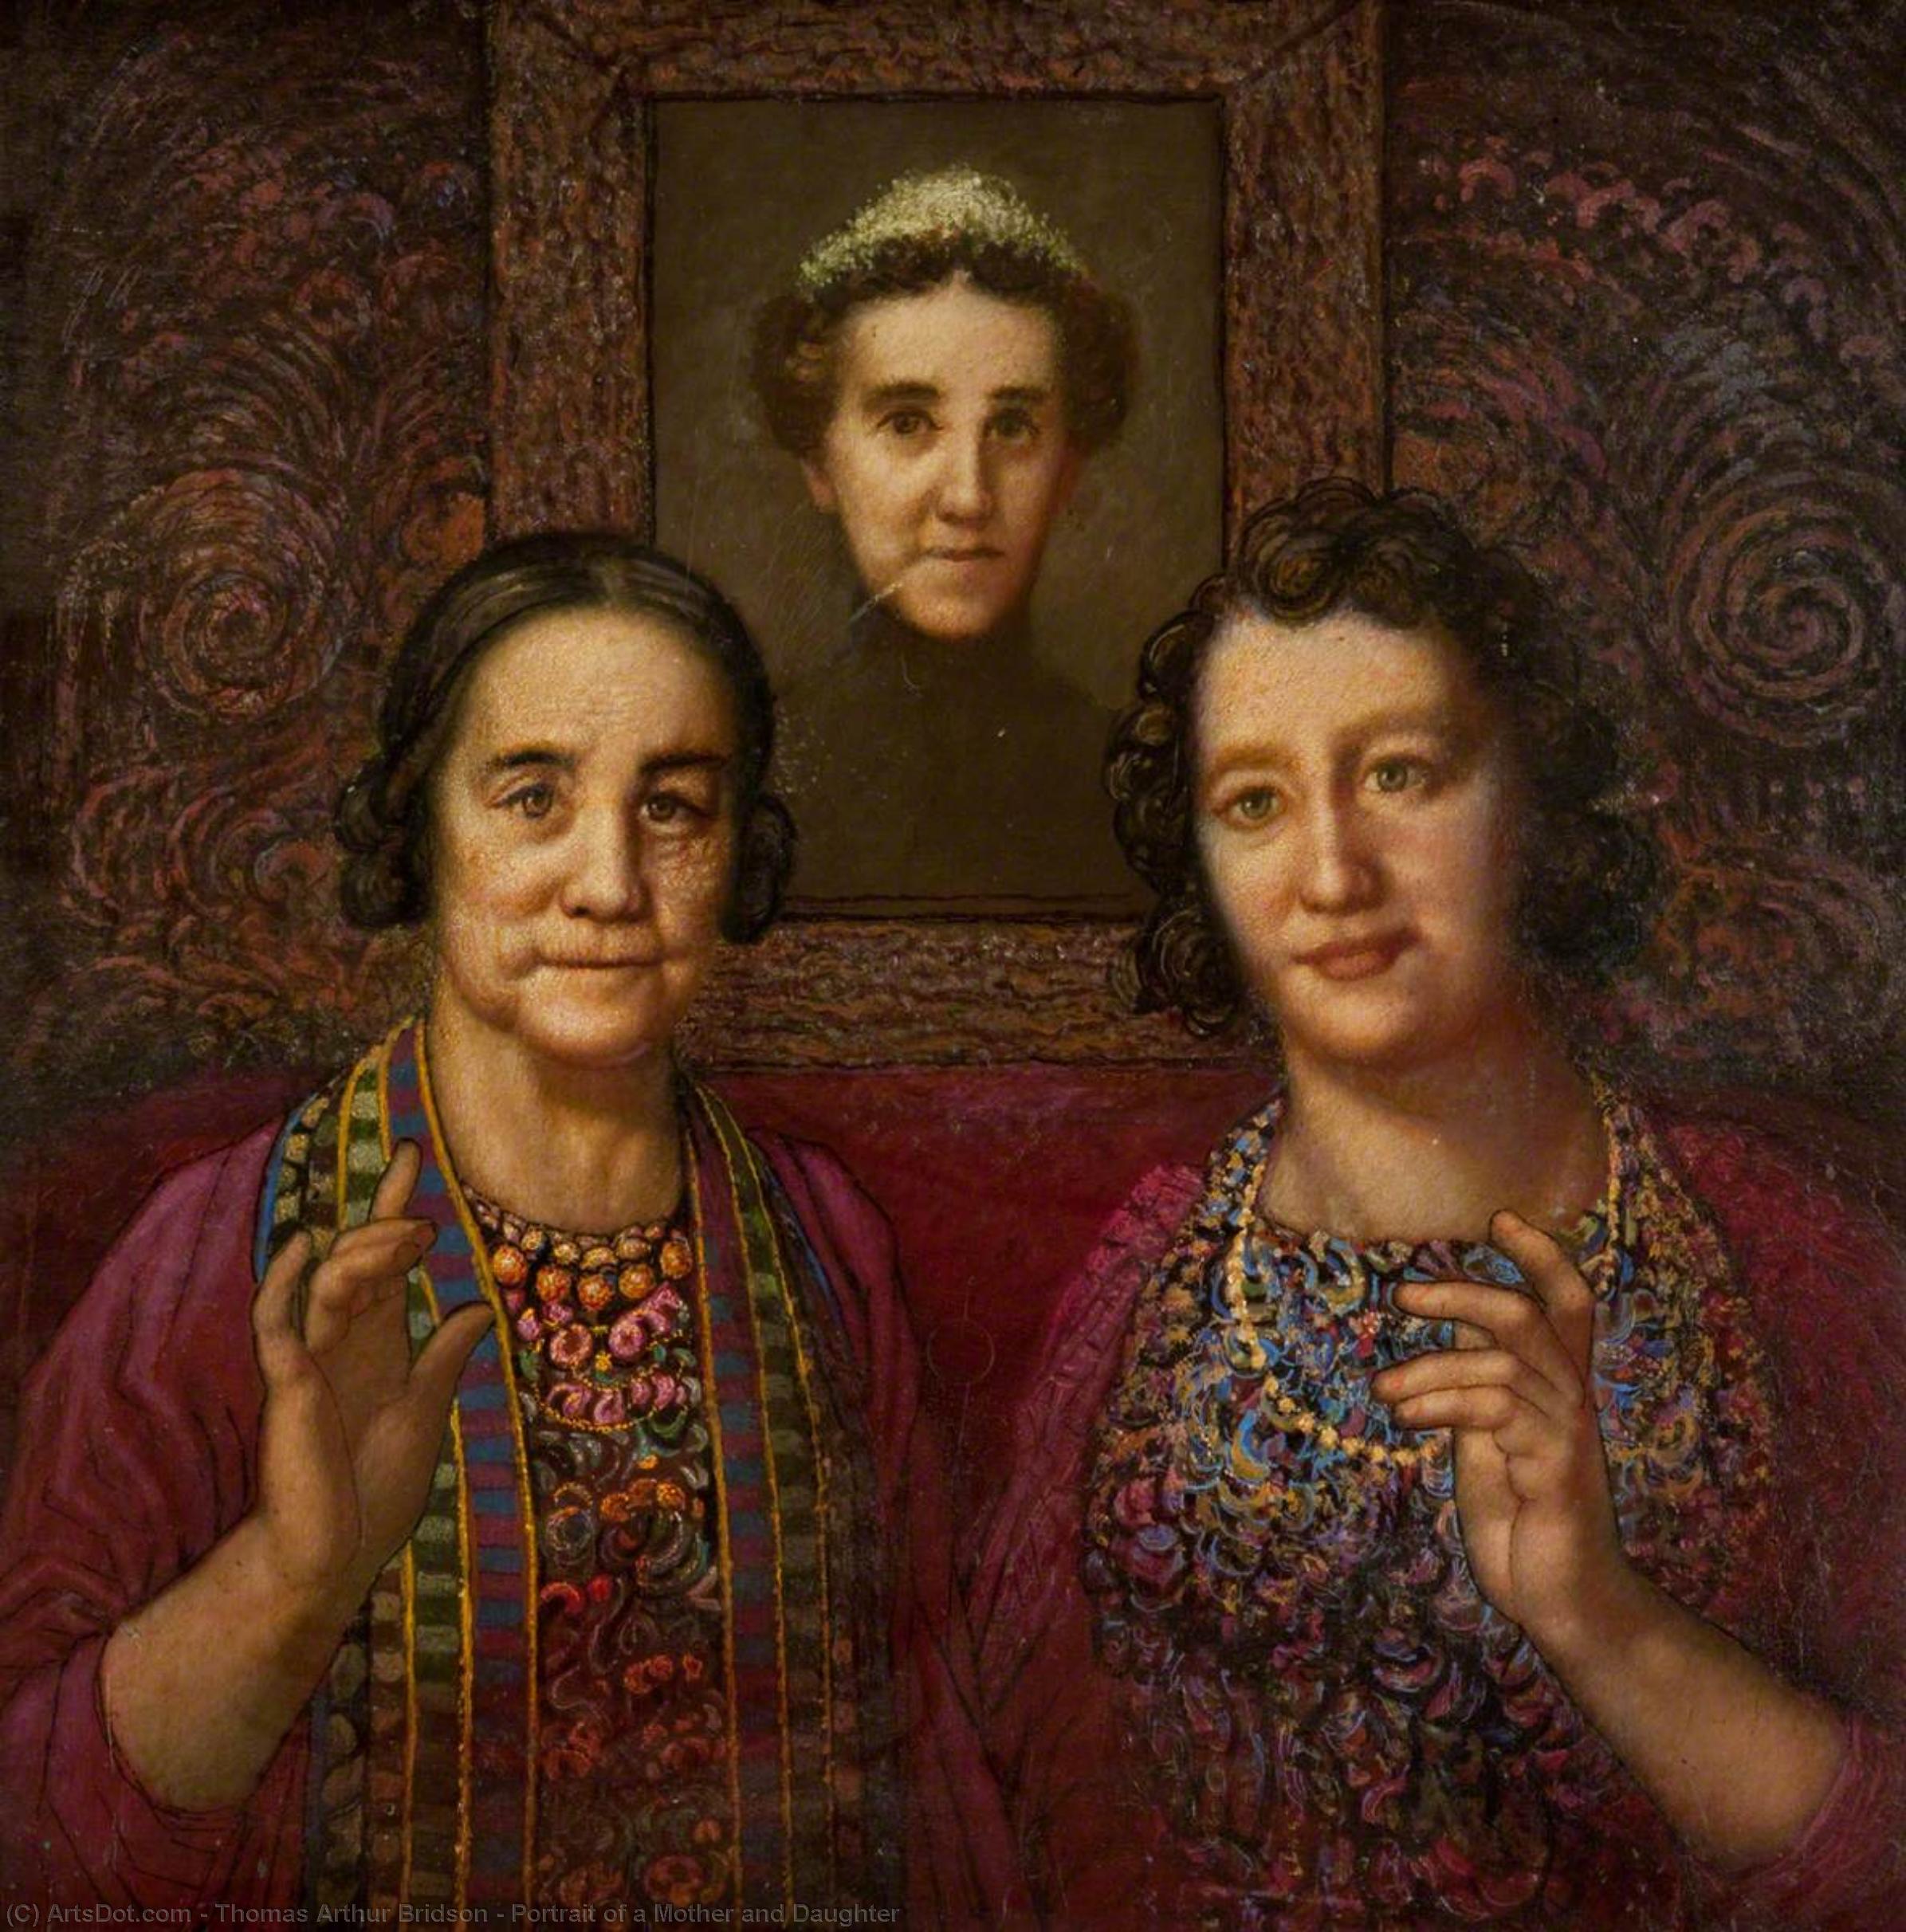 Compre Museu De Reproduções De Arte Retrato de uma mãe e filha por Thomas Arthur Bridson (Inspirado por) (1860-1966) | ArtsDot.com